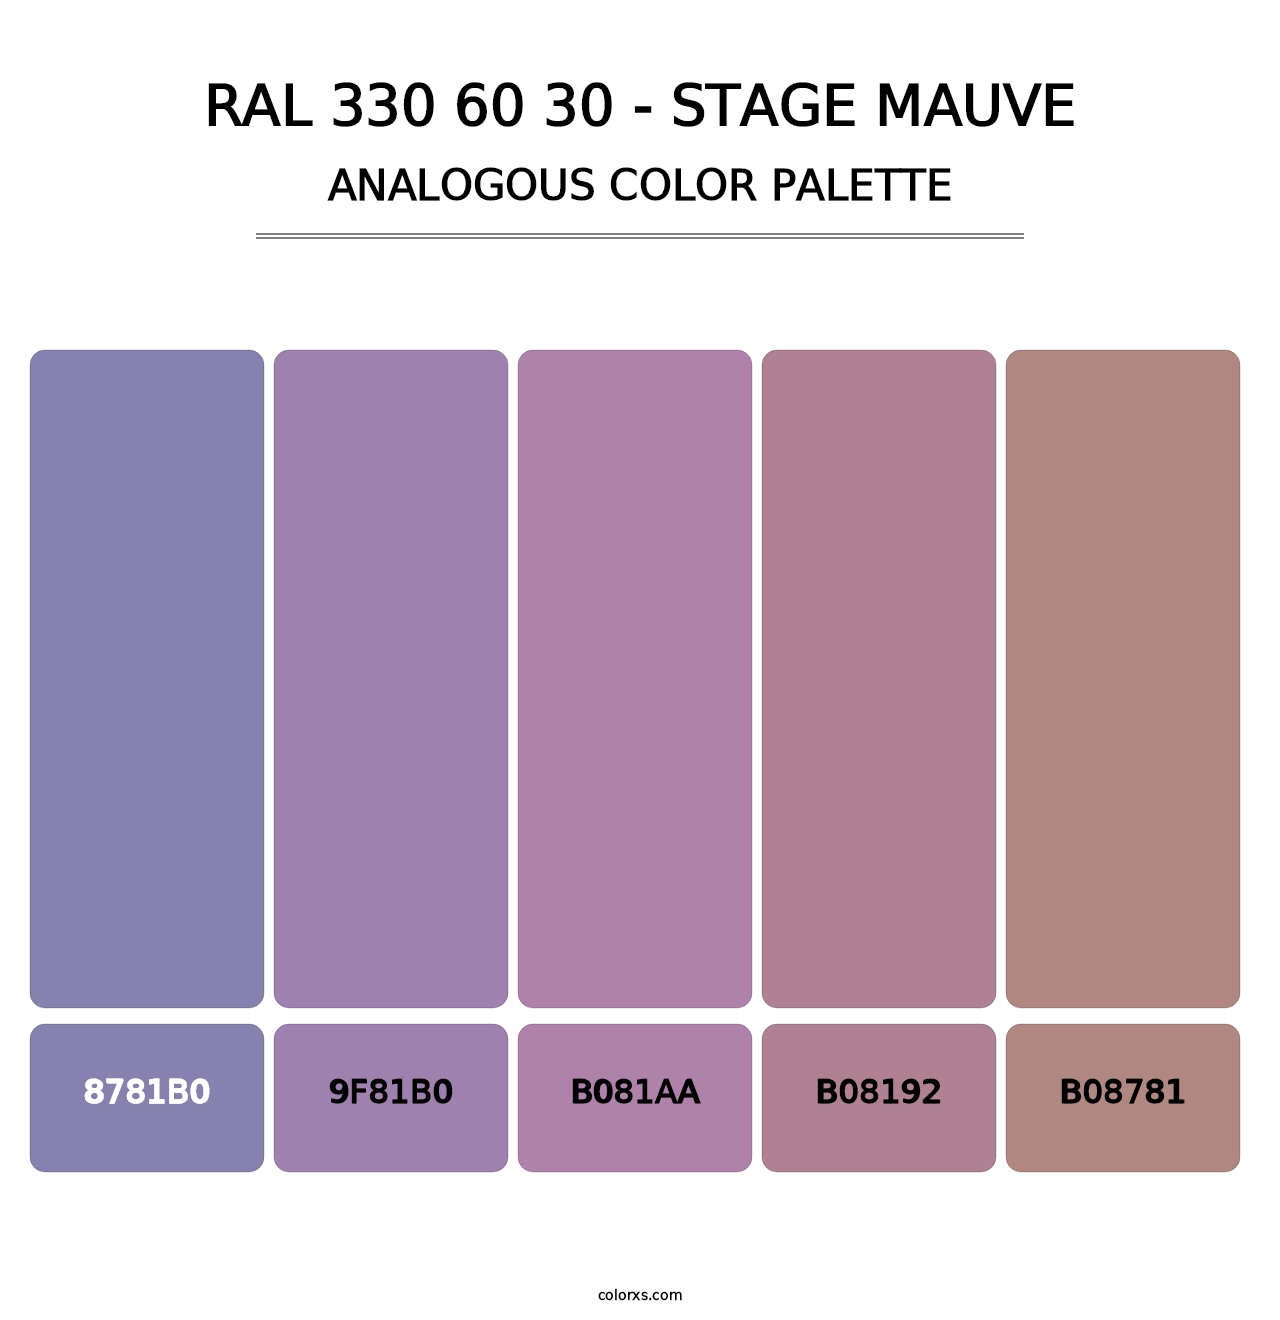 RAL 330 60 30 - Stage Mauve - Analogous Color Palette